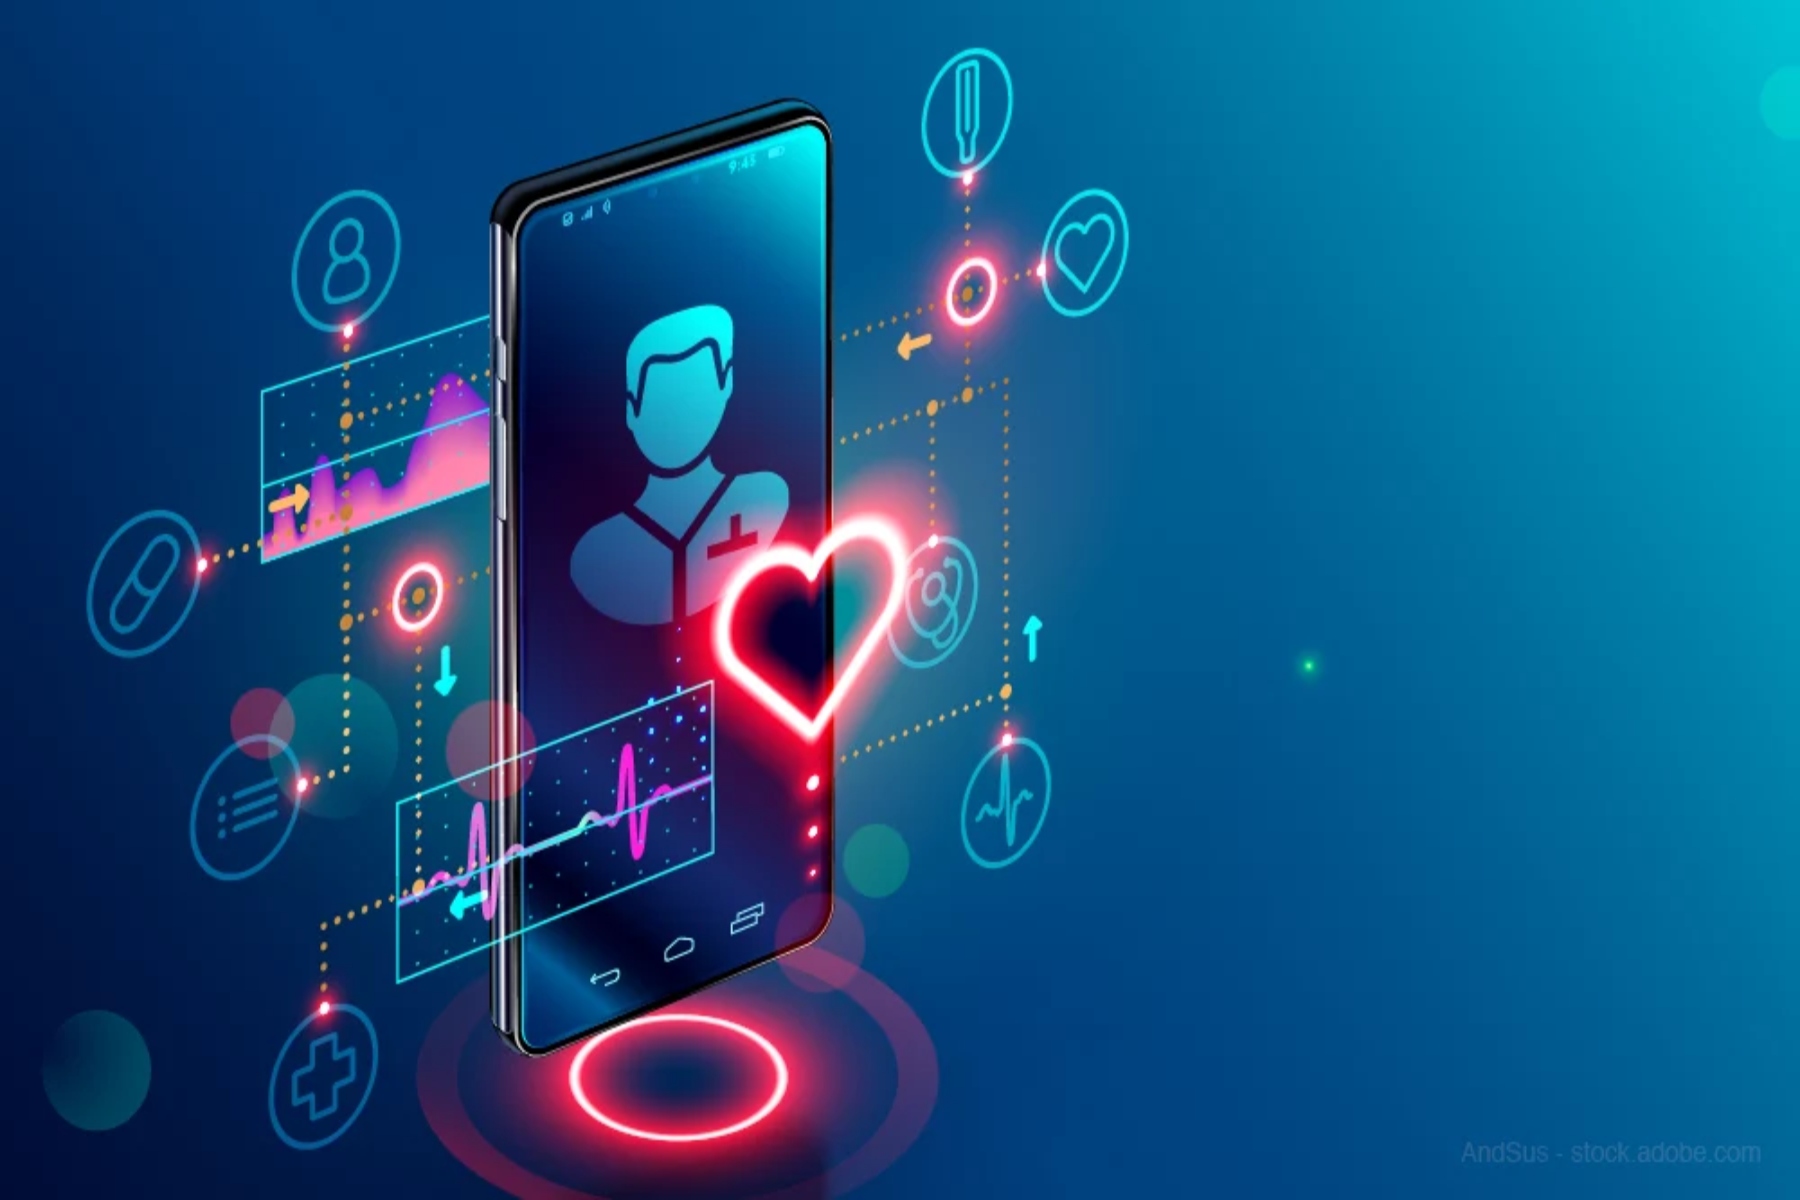 Ψηφιακή υγεία: Η έναρξη επισκέψεων τηλεϋγείας μέσω SMS ωφελεί τους ασθενείς